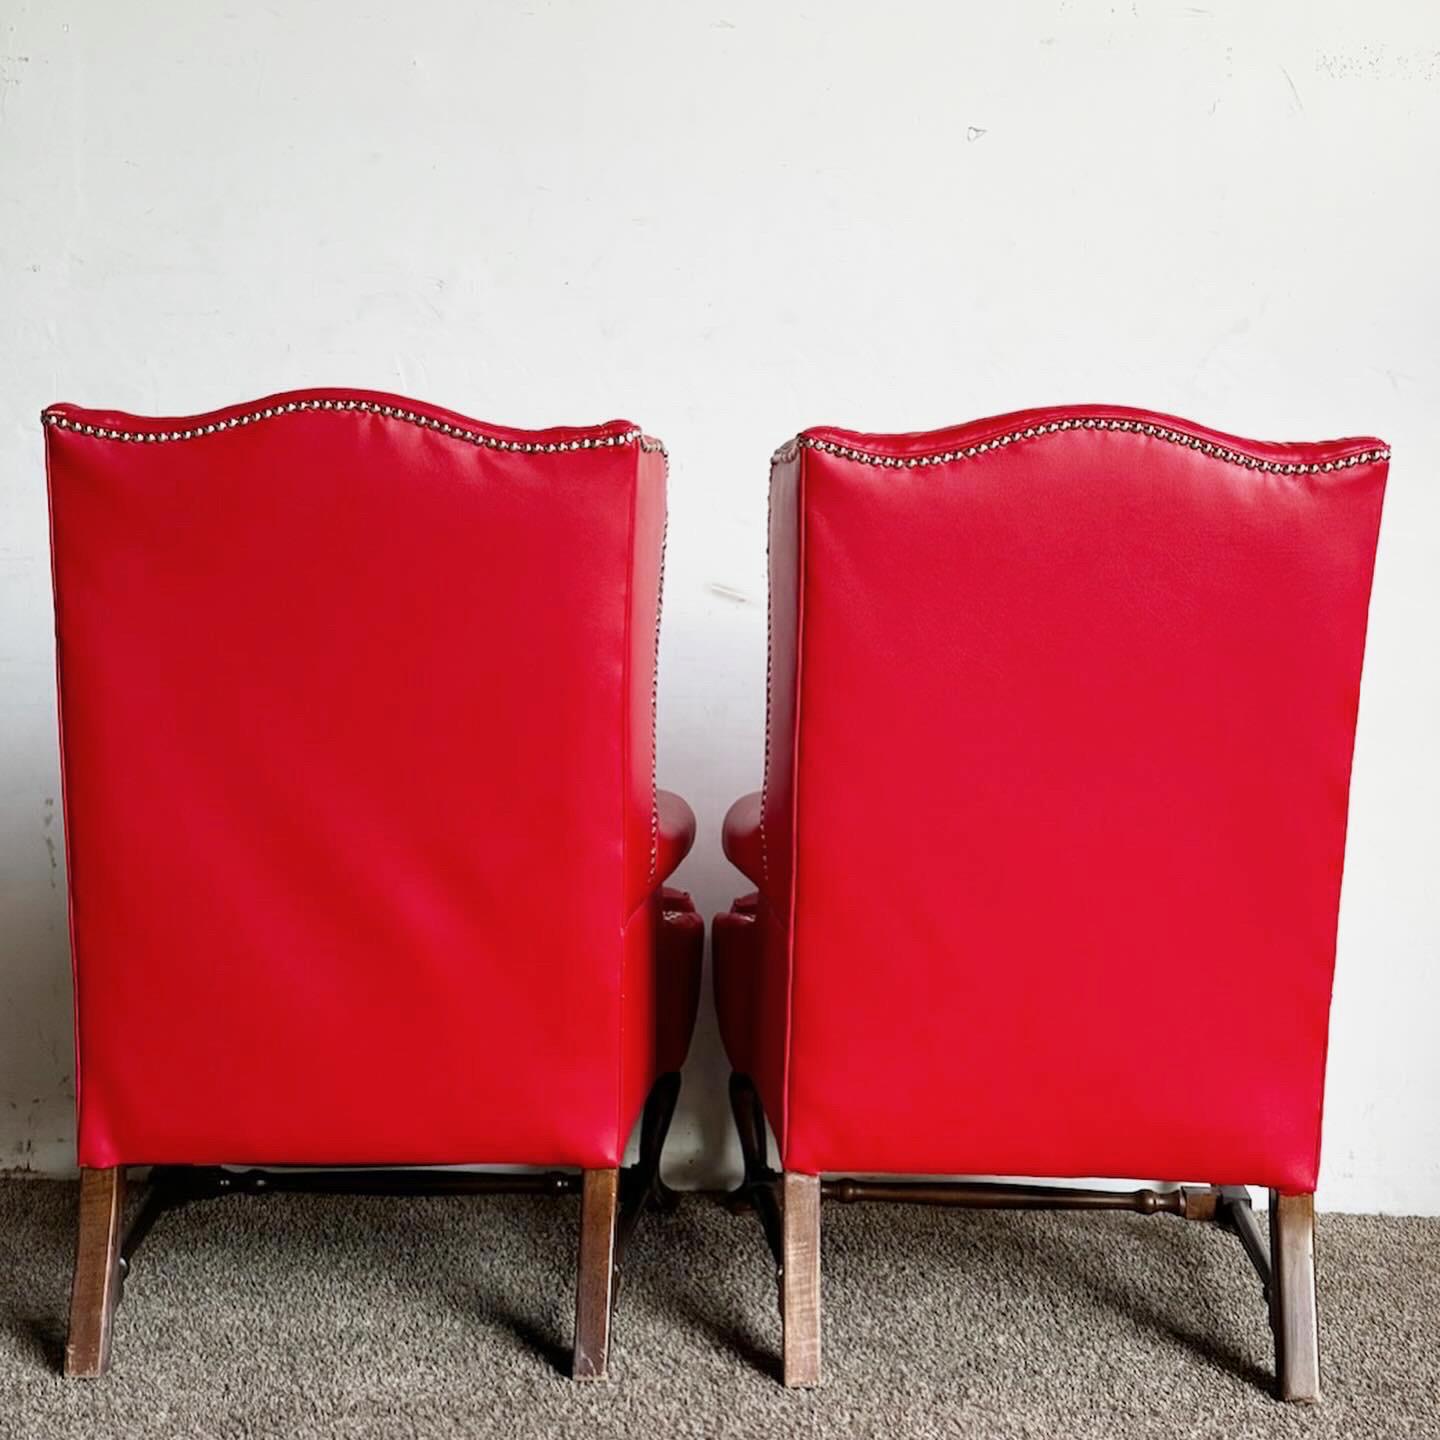 Die Traditional Red Faux Leather Wingback Chairs, die als Paar erhältlich sind, bringen zeitlose Eleganz in Ihre Einrichtung. Mit ihrer klassischen Silhouette bieten diese Stühle Stil und Komfort. Der satte rote Kunstlederbezug sorgt für Raffinesse